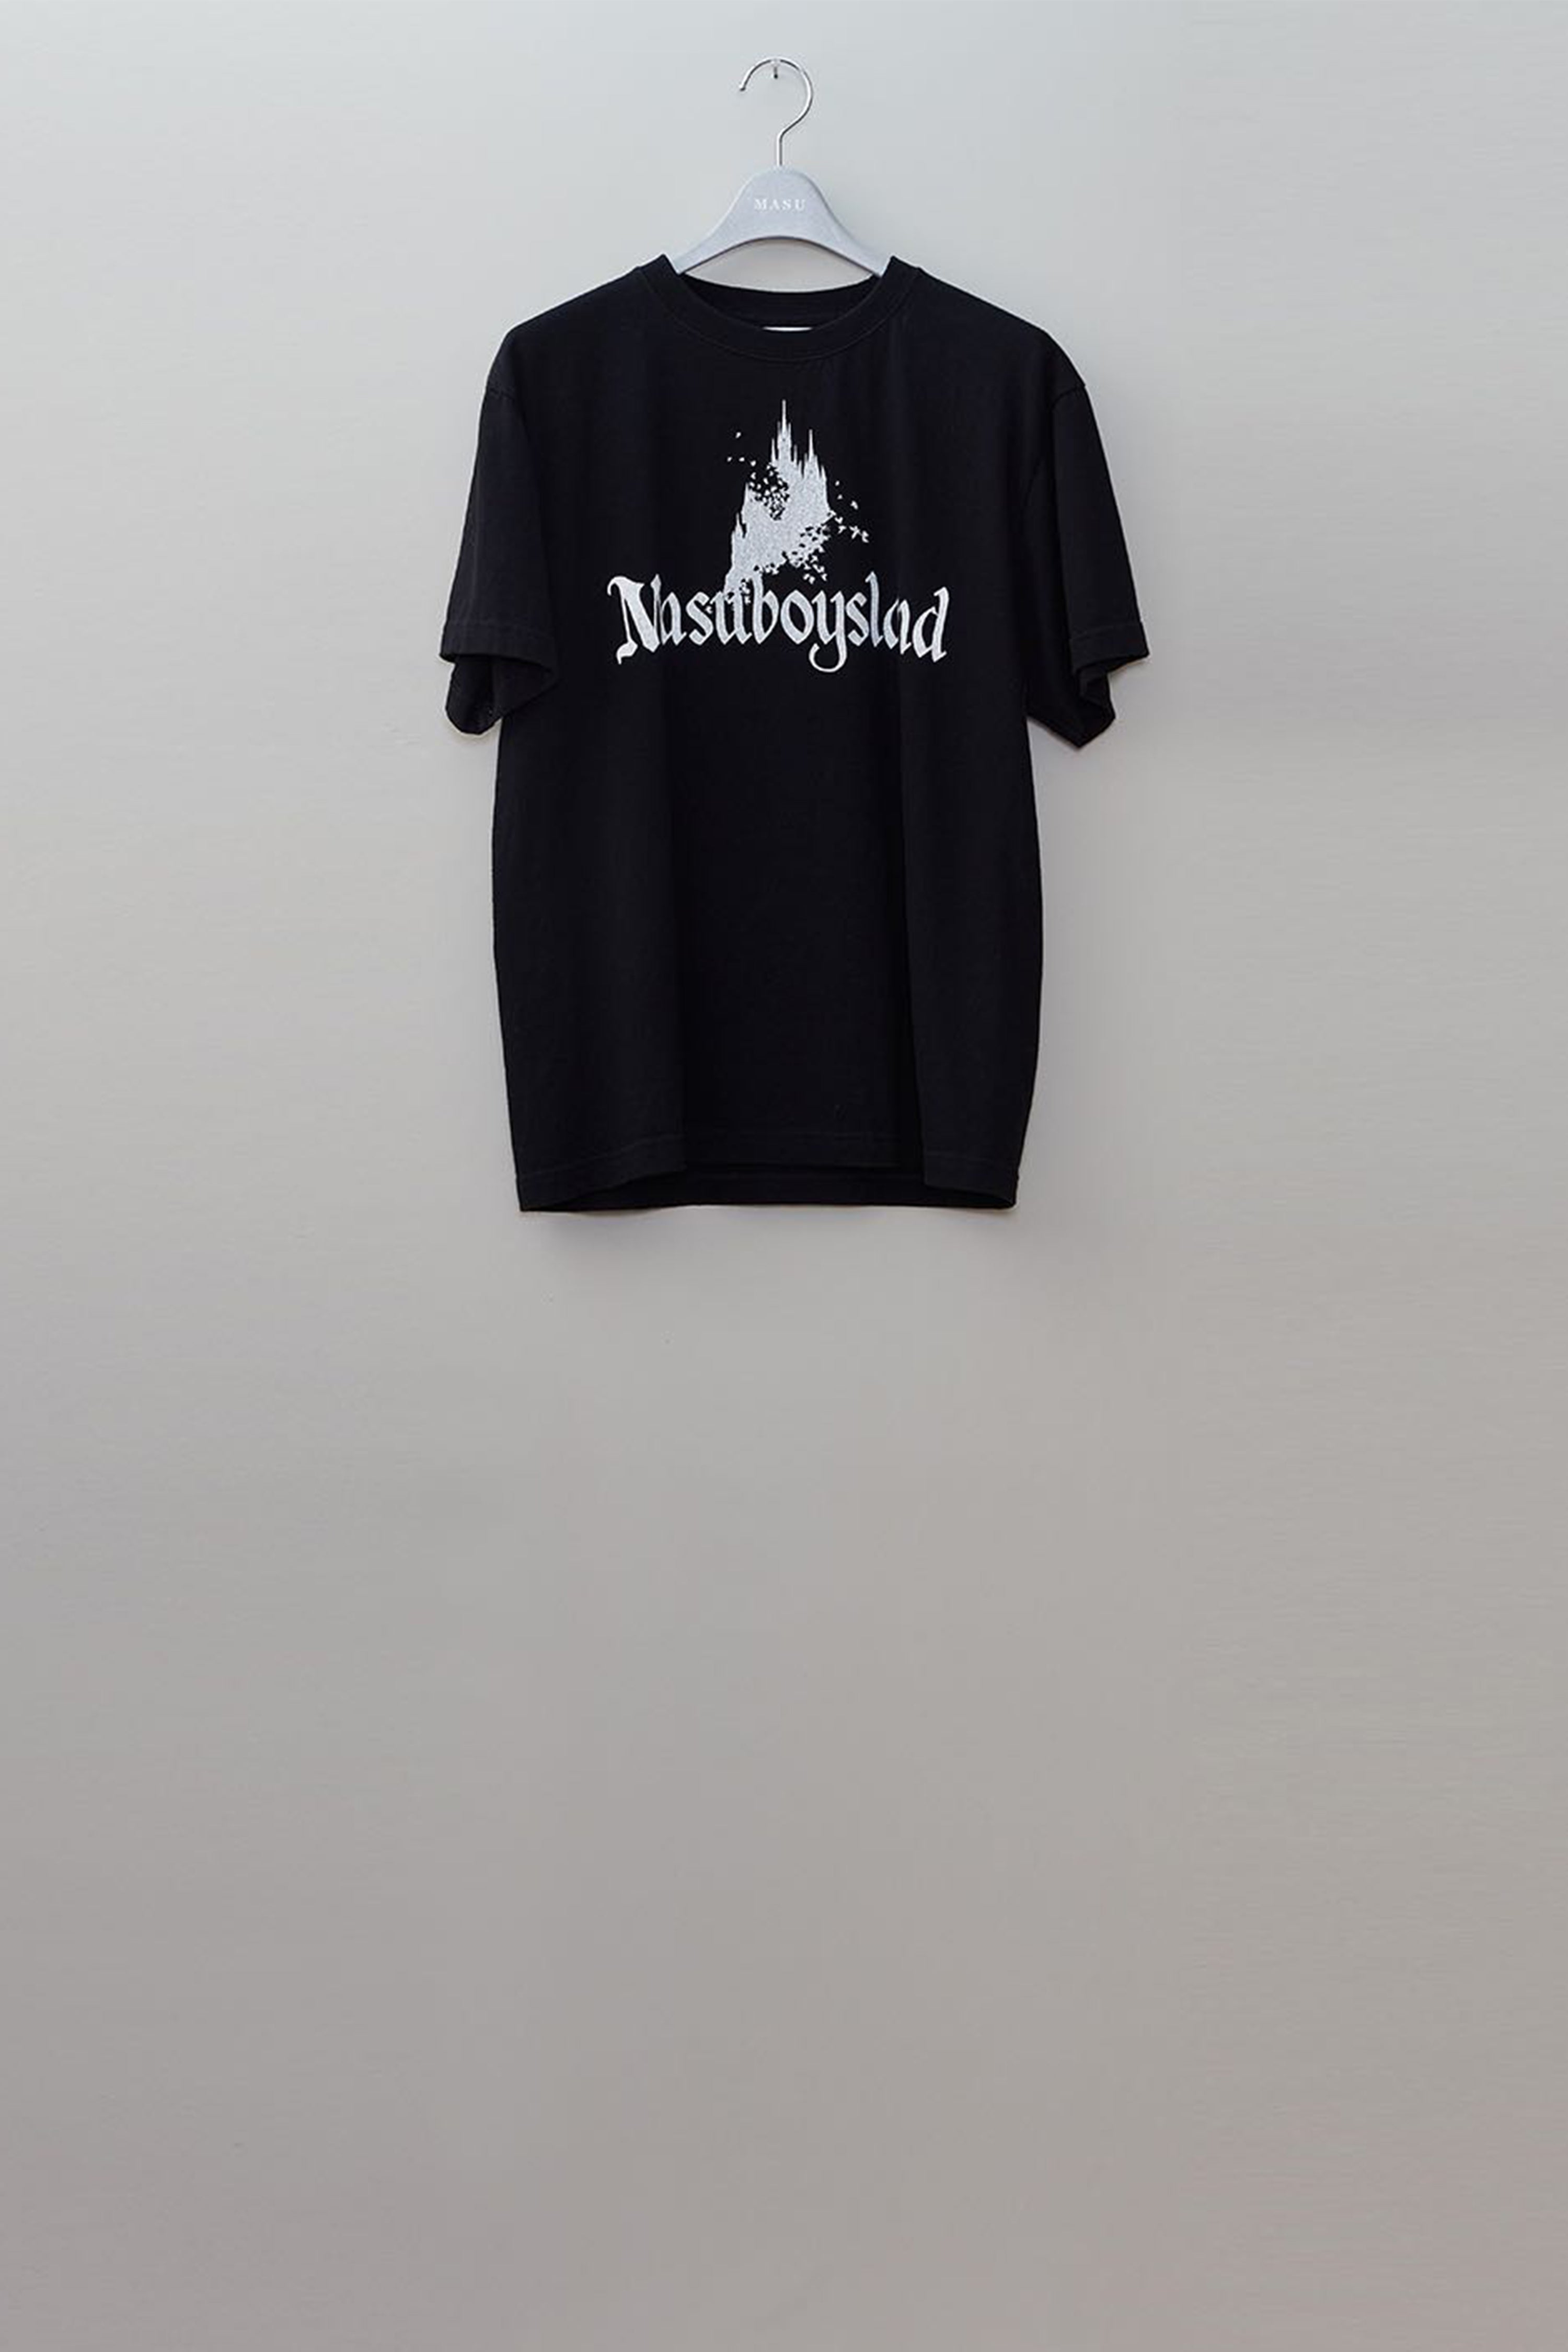 Masu's Masuboysland T-Shirts Black mail order | Palette Art Alive